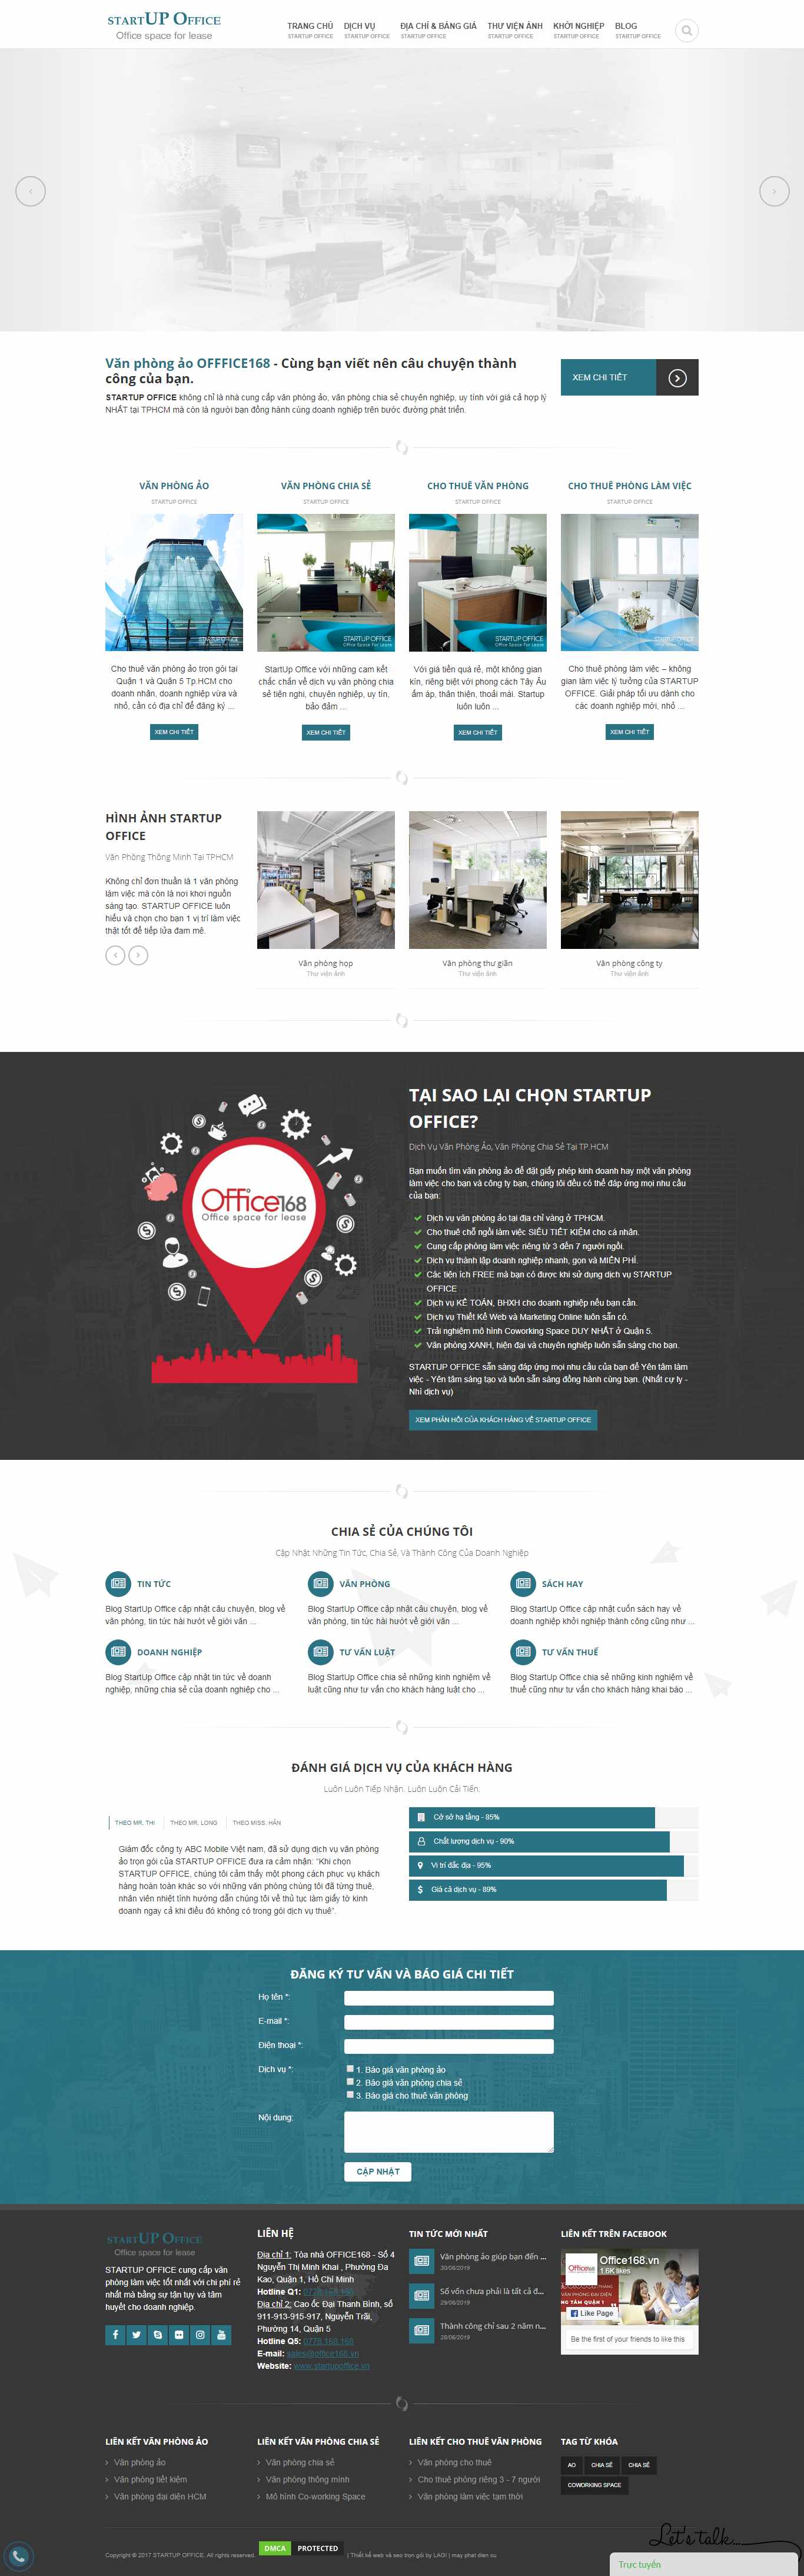 Thiết kế Website văn phòng ảo - www.startupoffice.vn